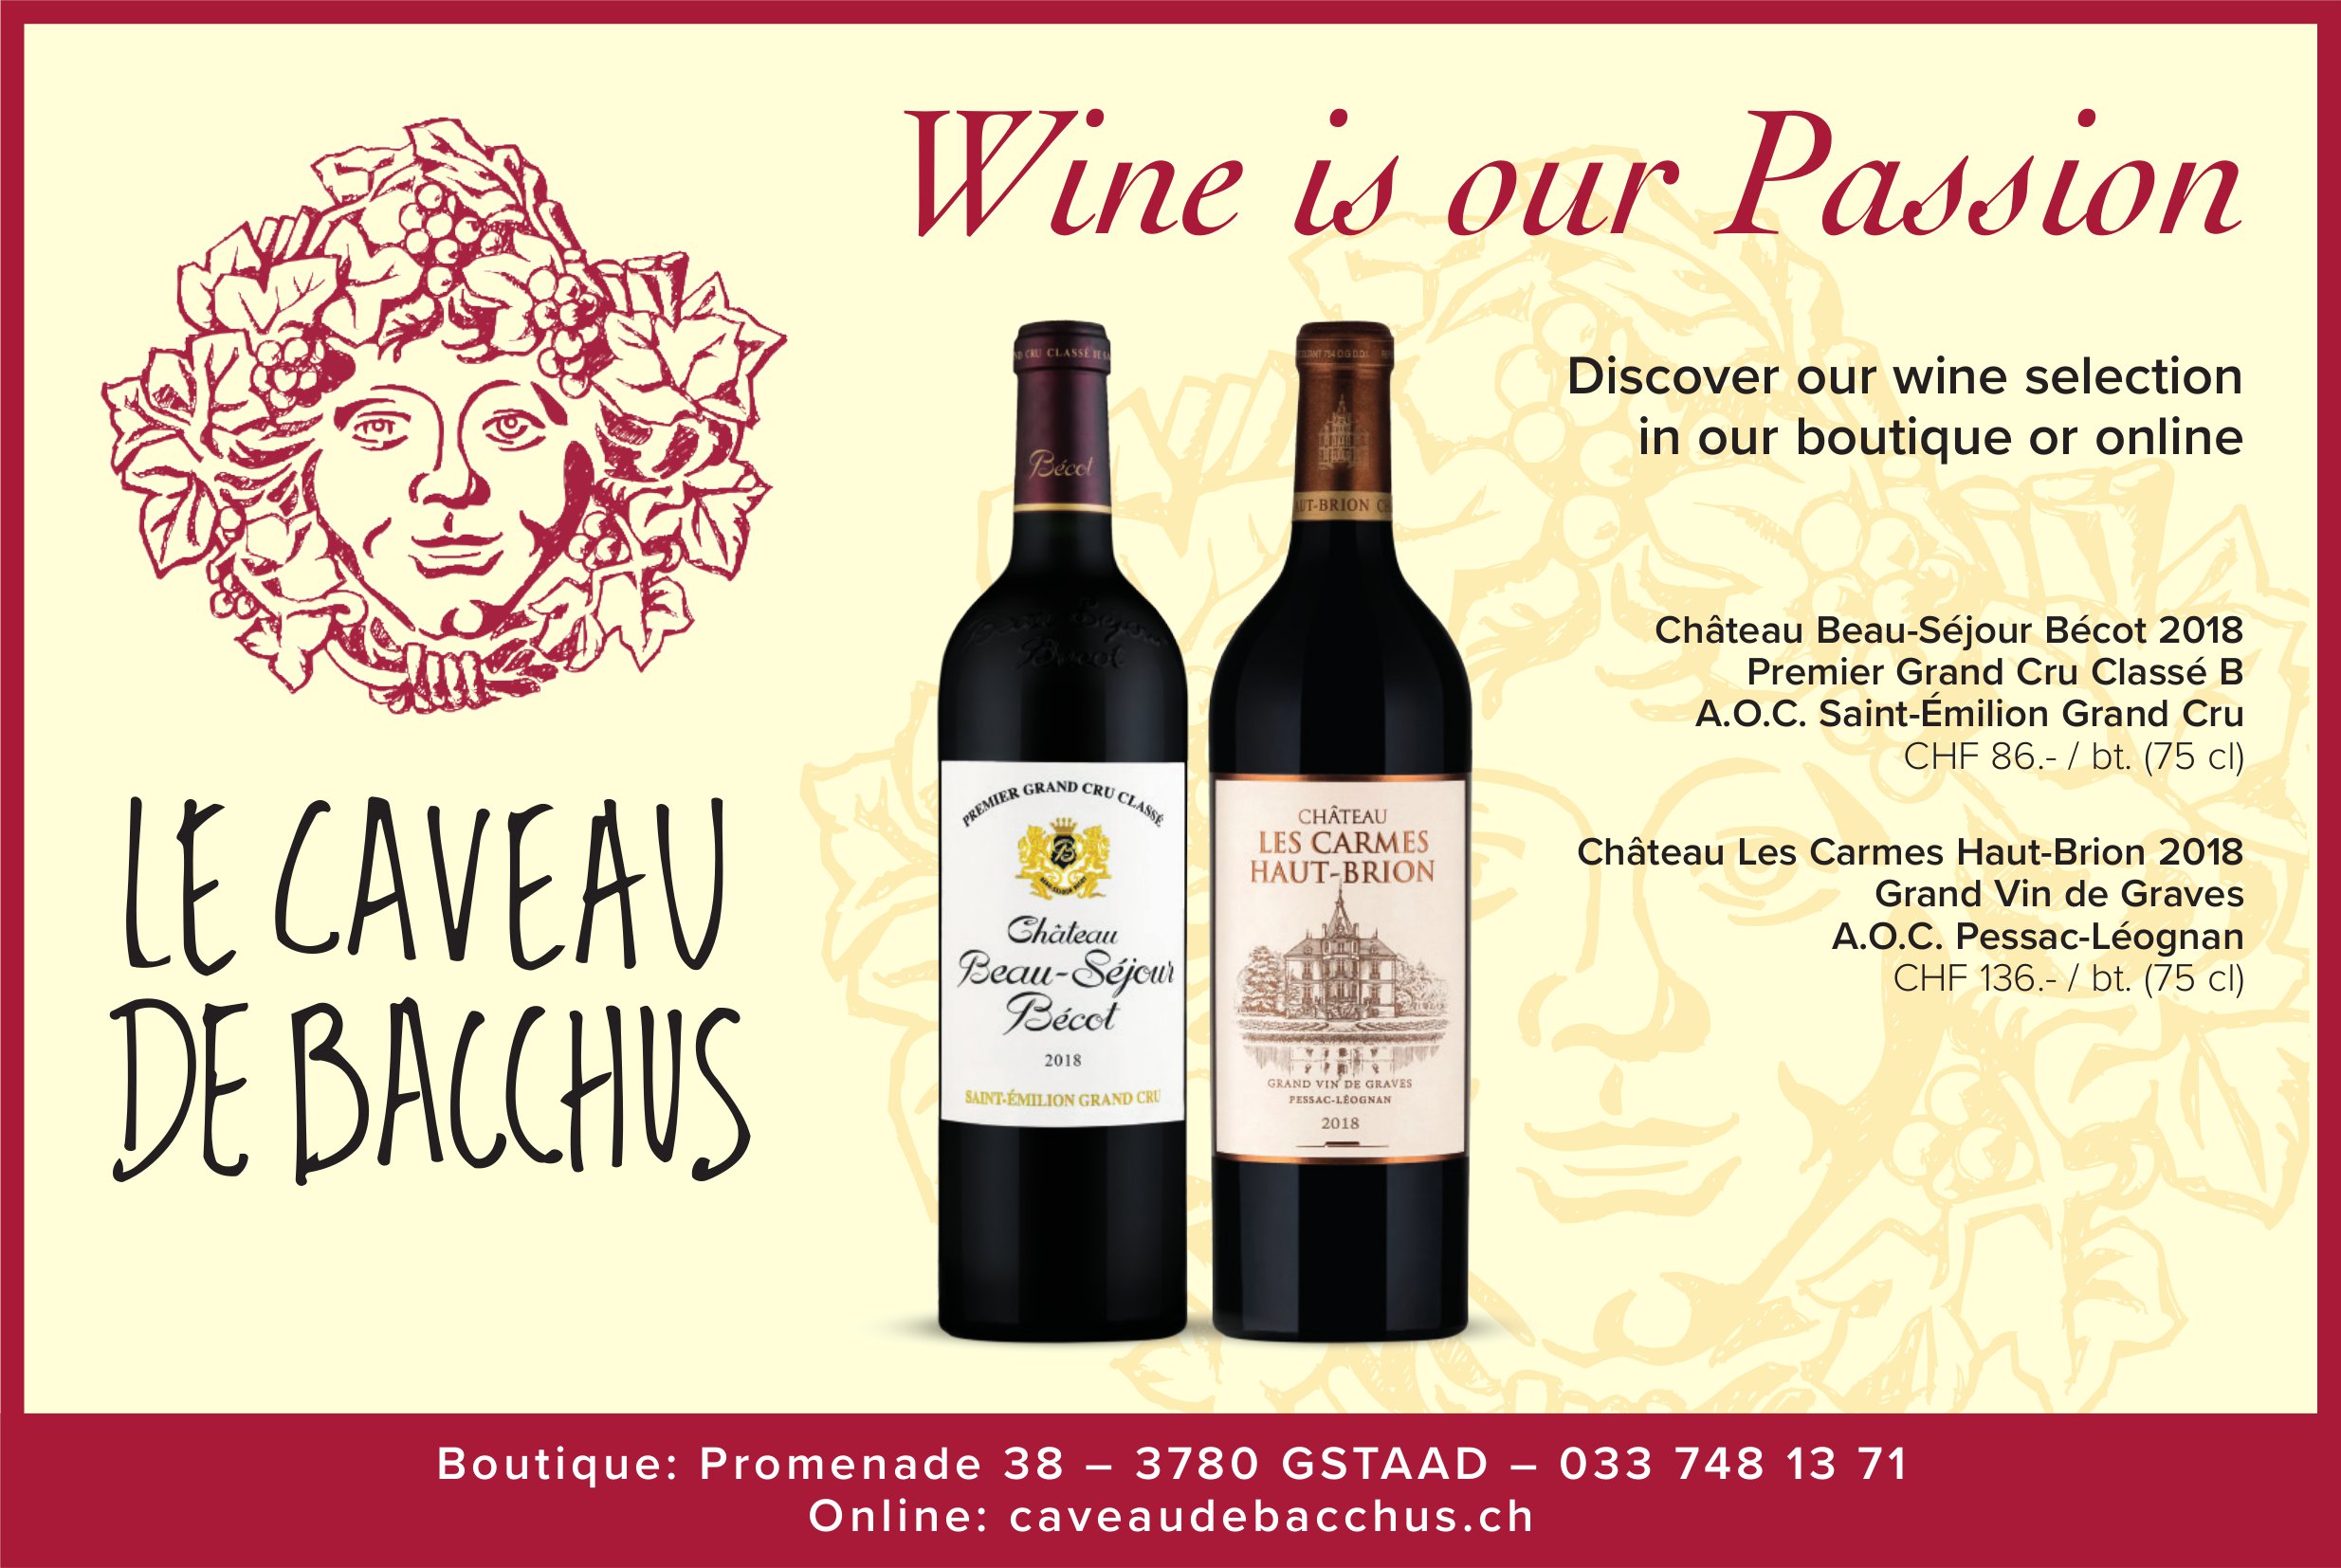 Le Caveau de Bacchus, Gstaad - Wine is our Passion